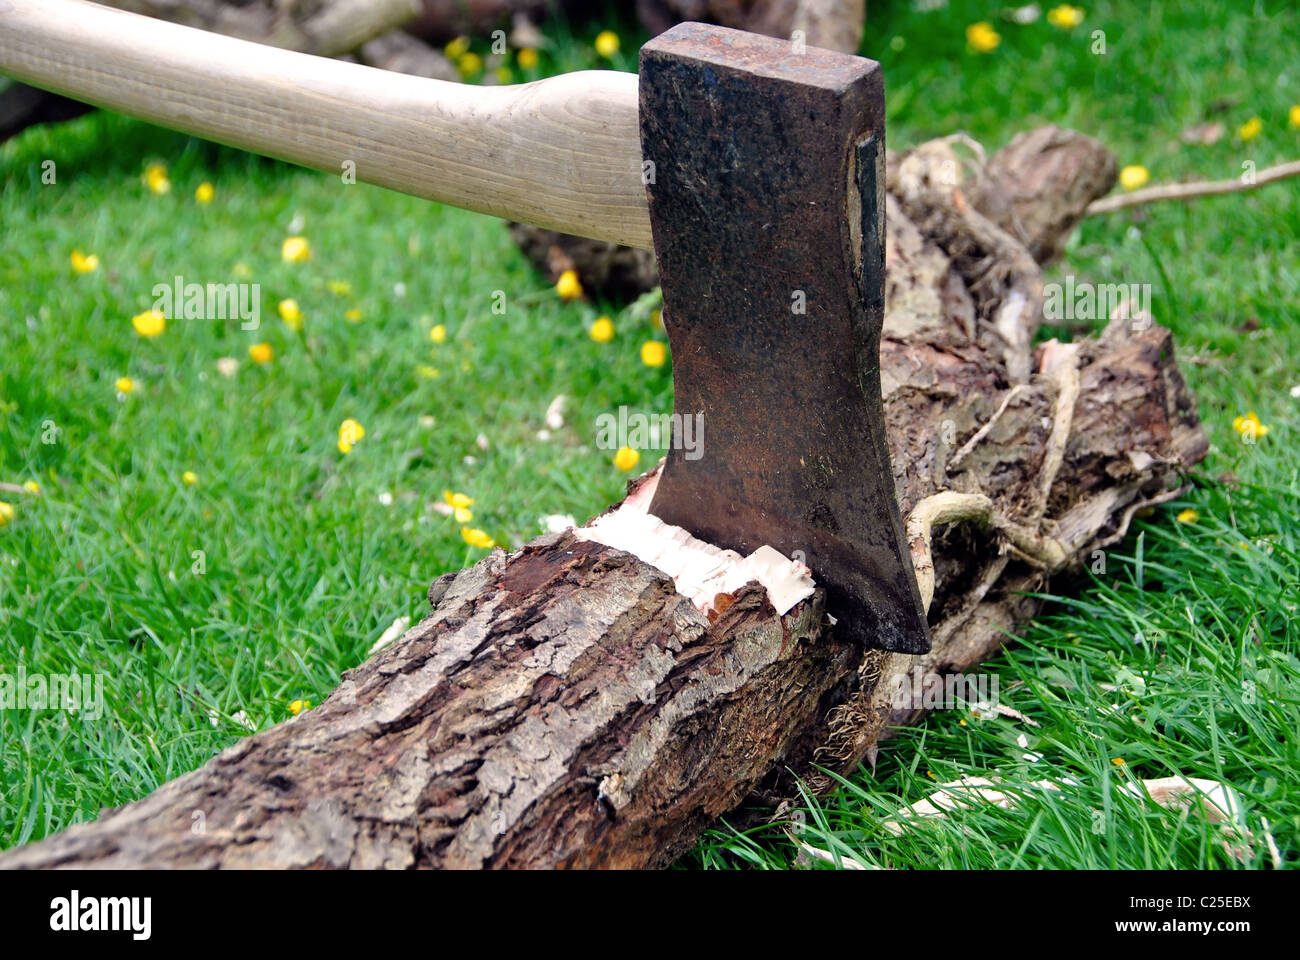 Holz-Chopping-Holzfäller Axt stecken in einem Baum-Protokoll auf dem grünen Rasen mit einem Haufen Brennholz im Hintergrund Stockfoto